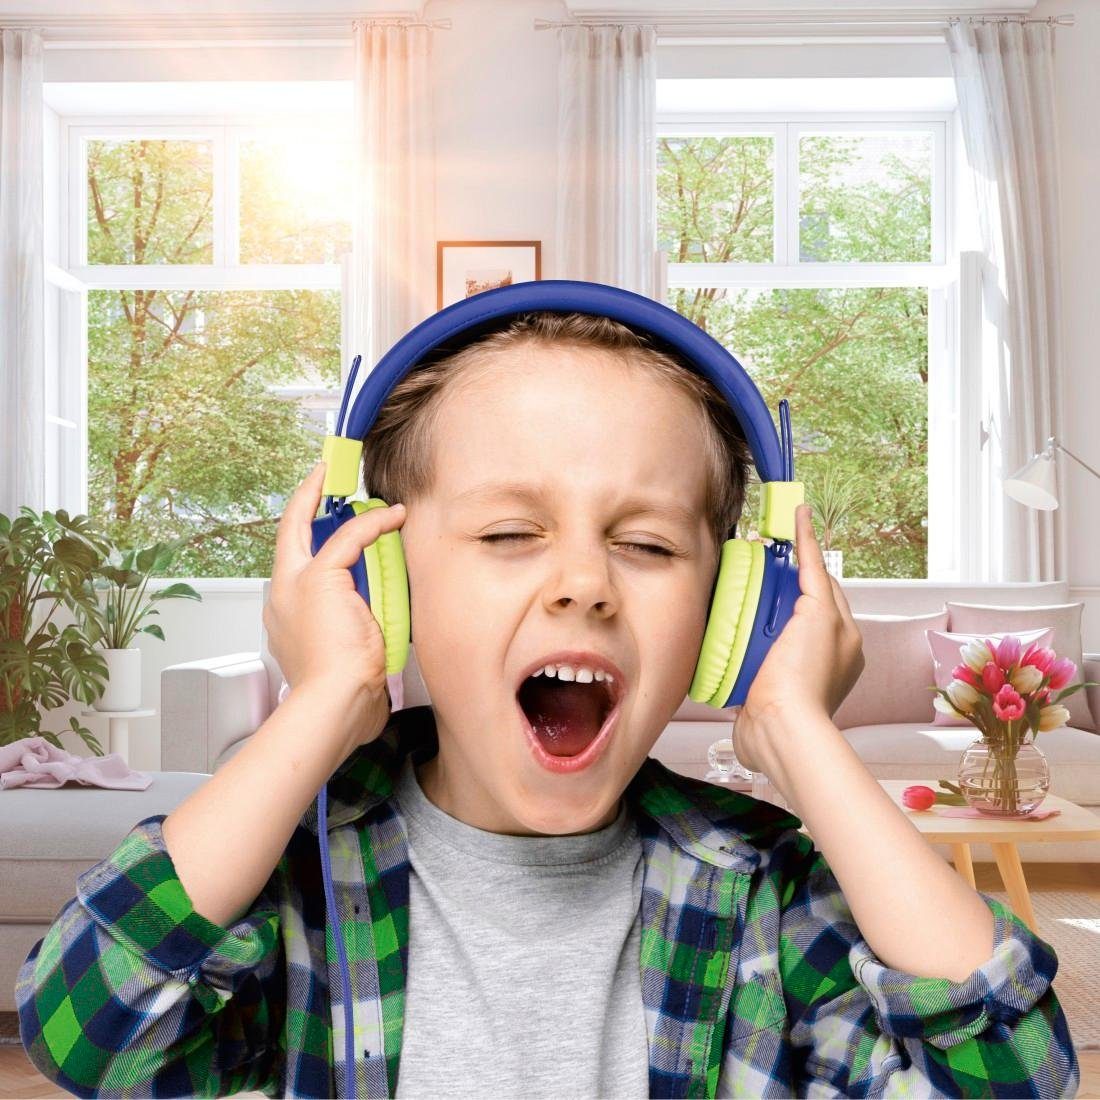 Thomson Kinderkopfhörer mit Kabel On-Ear, (größenverstellbar möglich) auf Kopfhöreranschluss On-Ear-Kopfhörer blau zusammenfaltbar, leicht weiterer 85dB Lautstärkebegrenzung